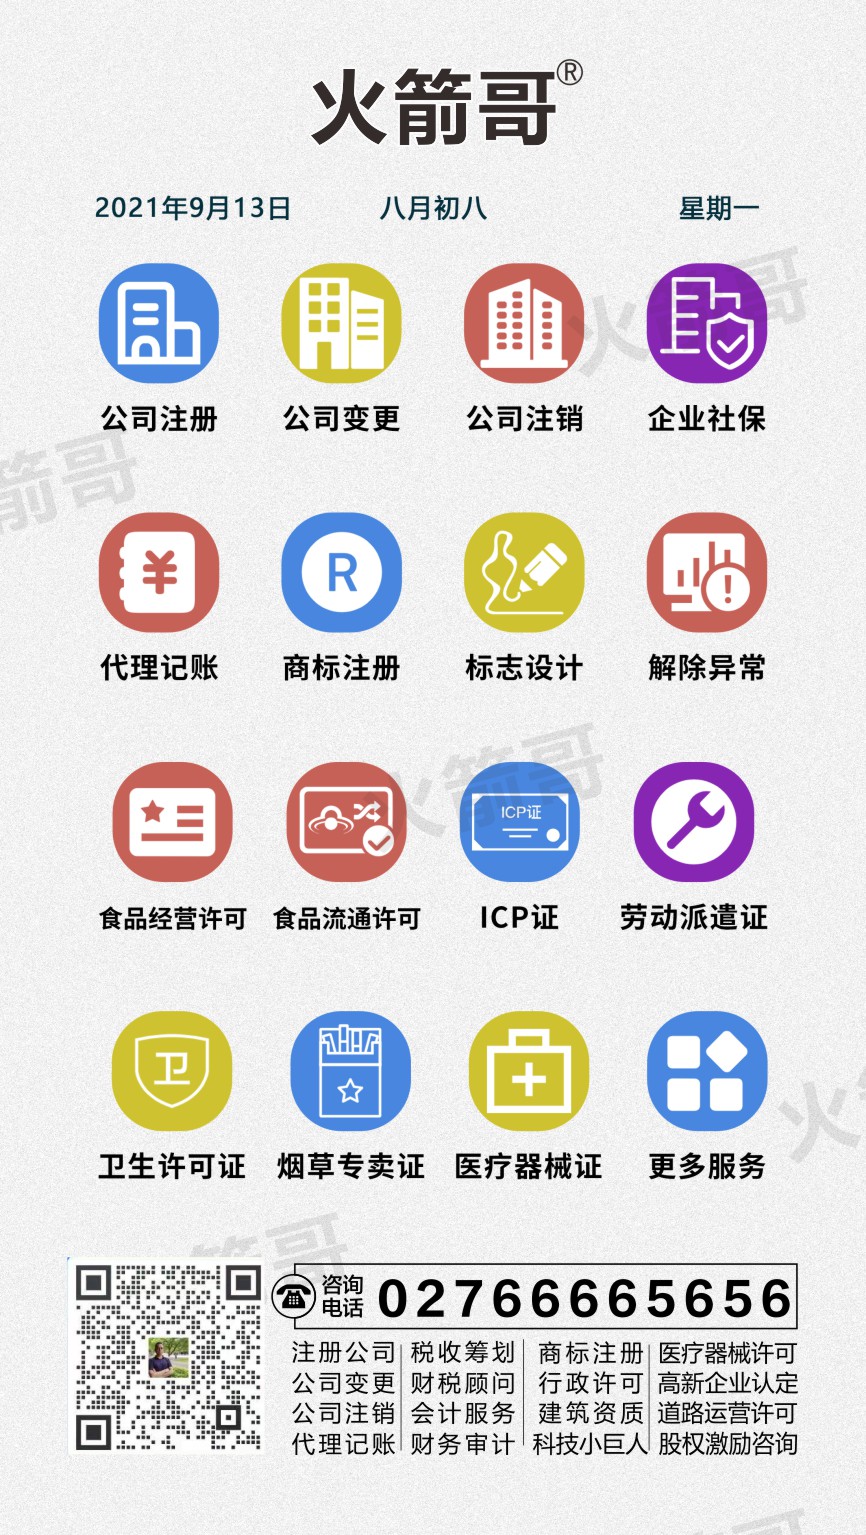 江汉区武昌股东变更流程网上怎么操作 具体操作如下